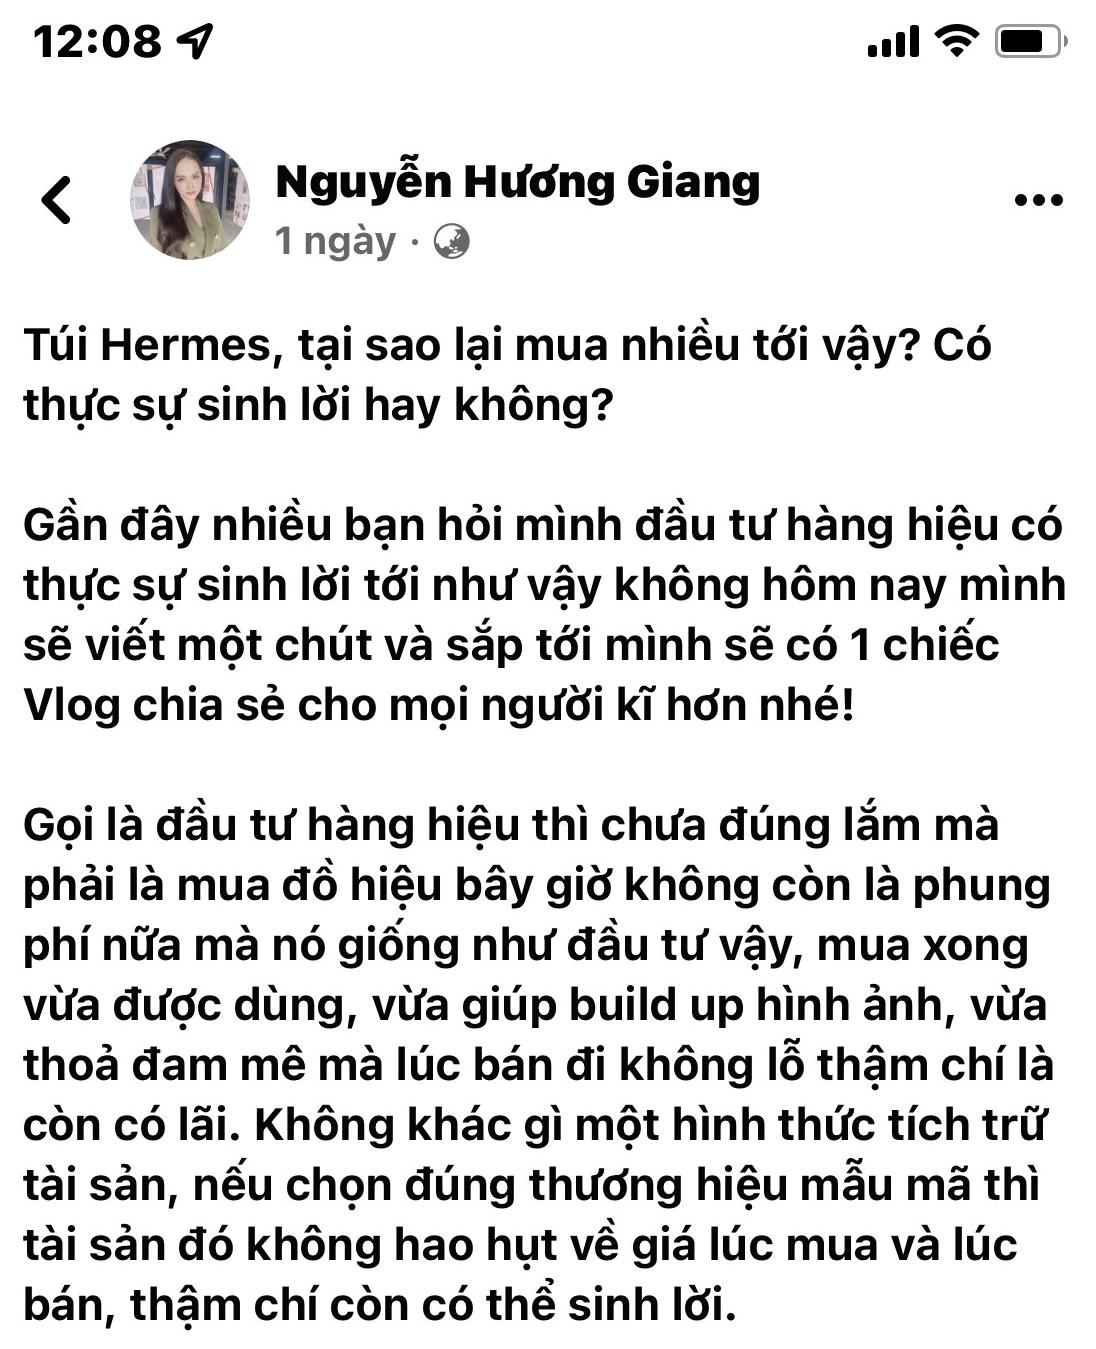 Cụ thể lời chia sẻ về việc đầu tư túi hiệu của Hoa hậu Hương Giang.